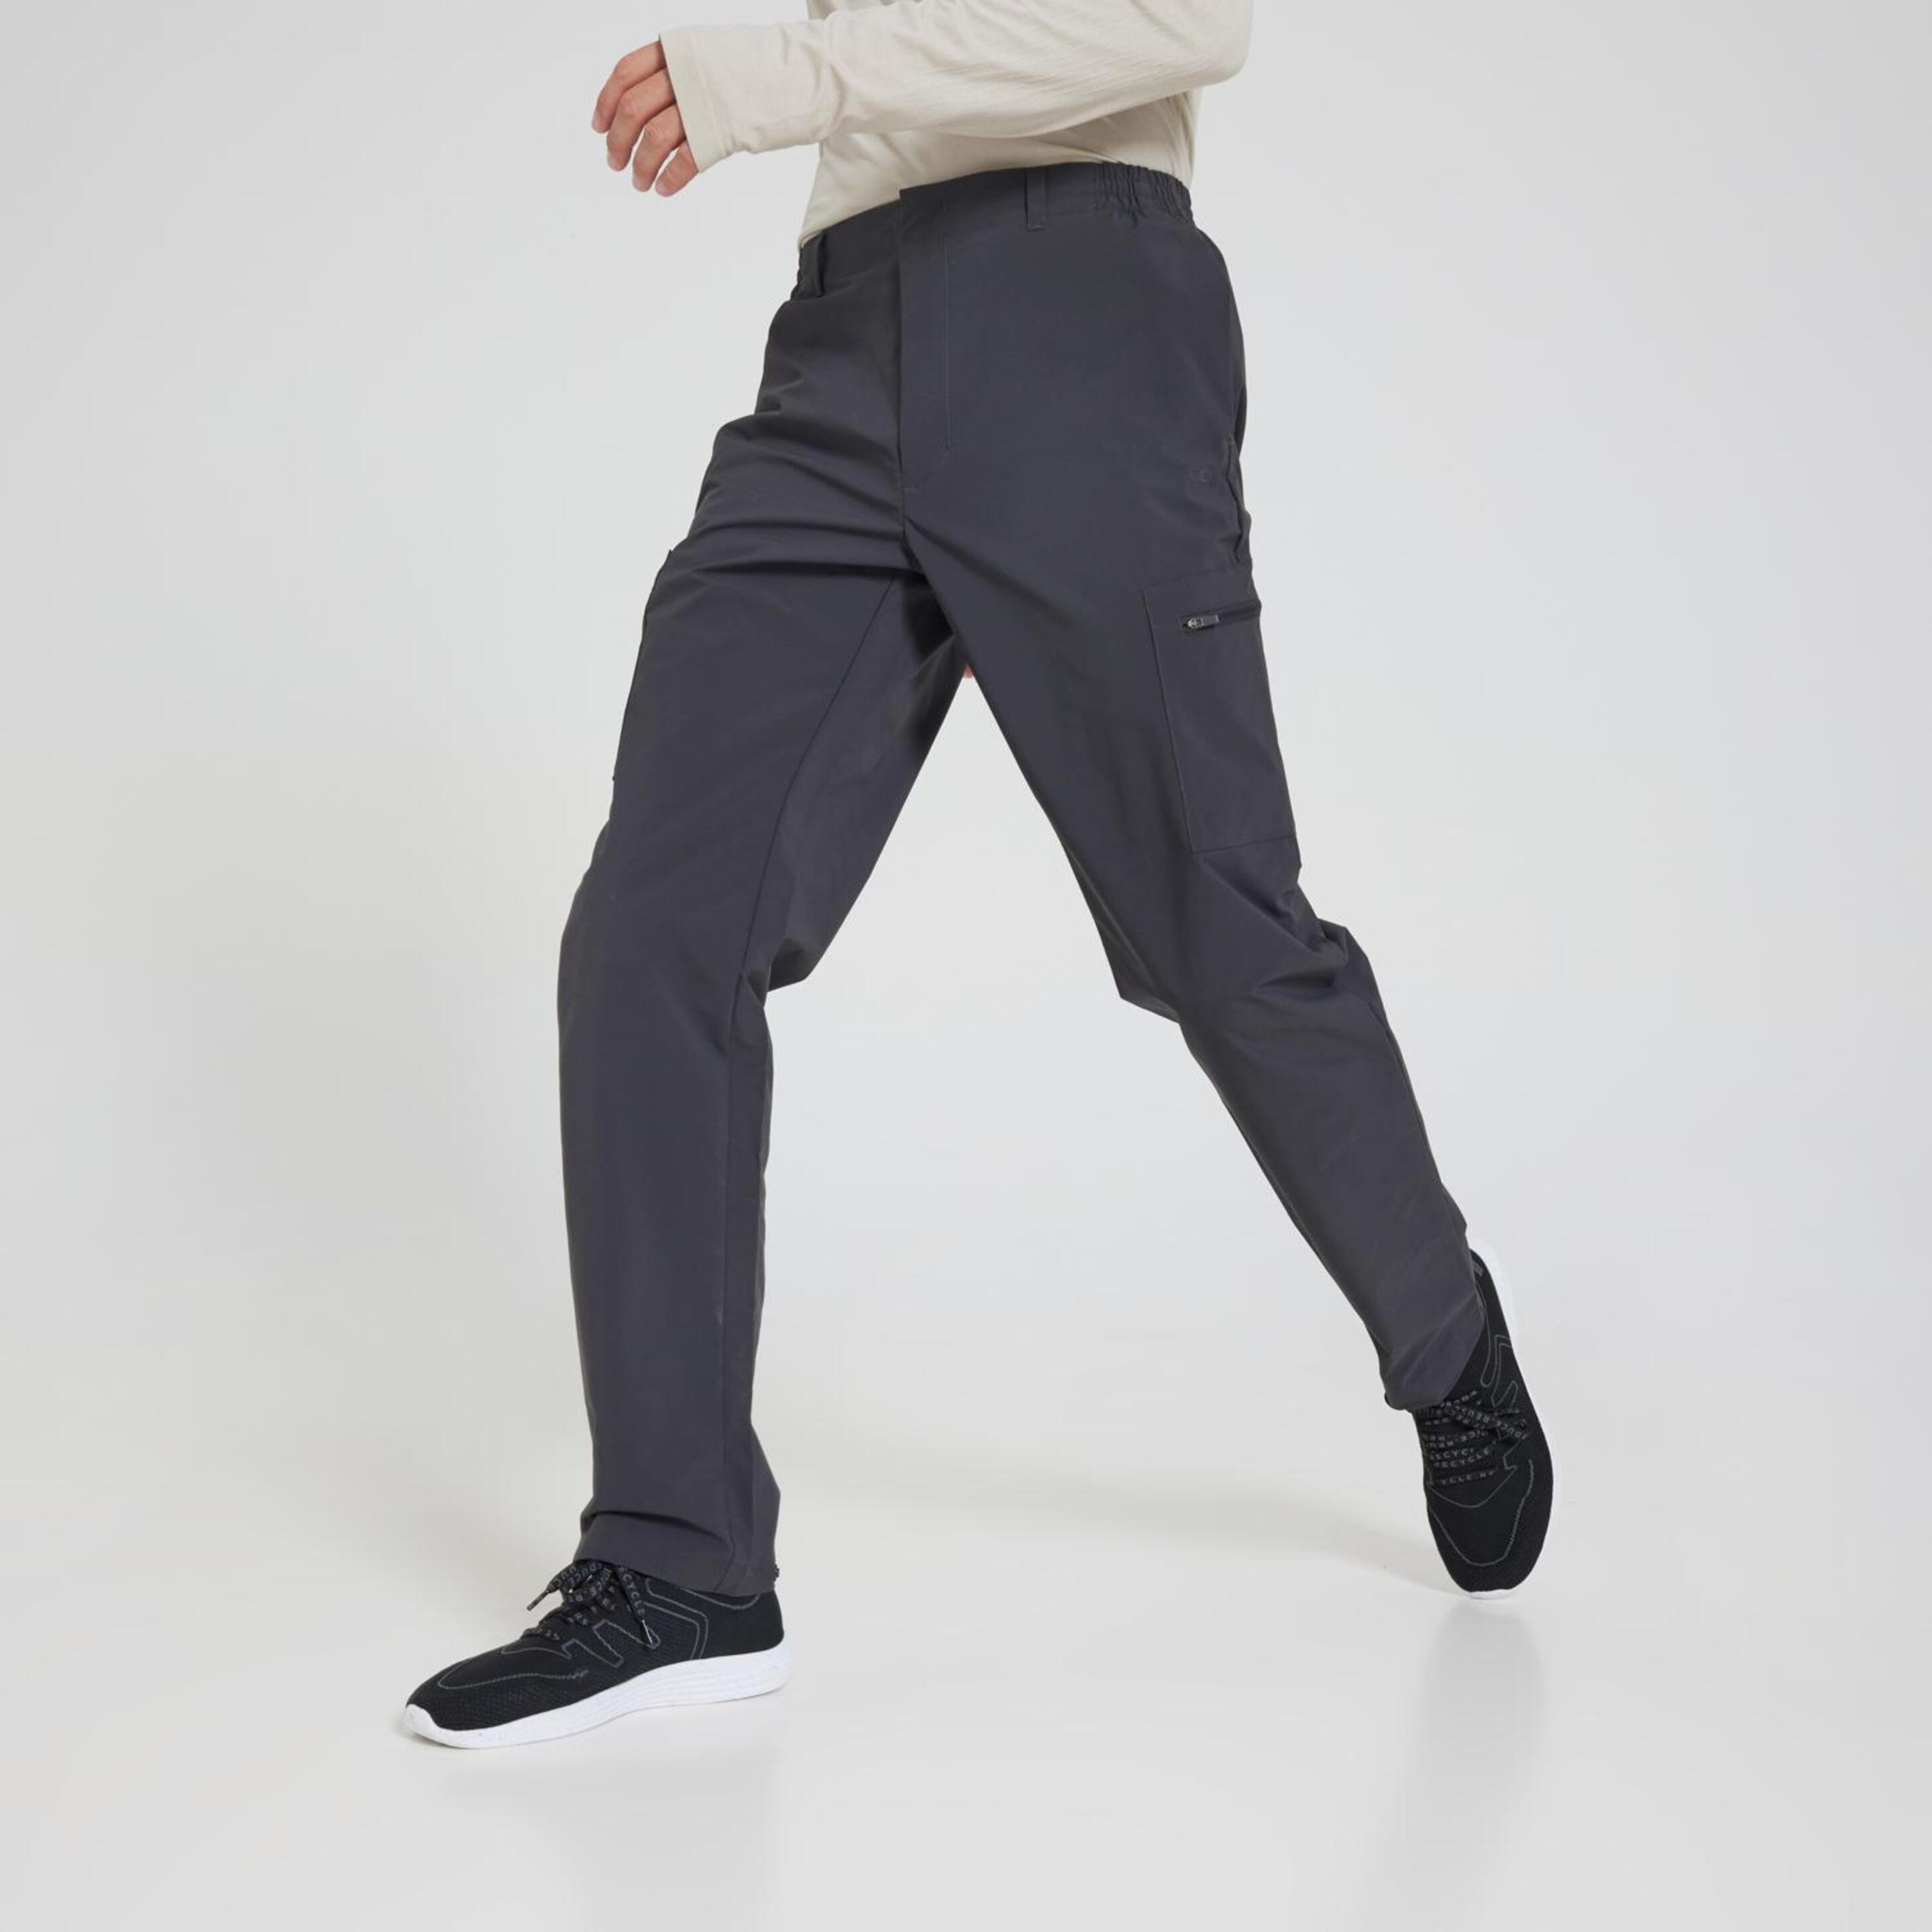 Pantalón Doone - gris - Pantalón Hombre